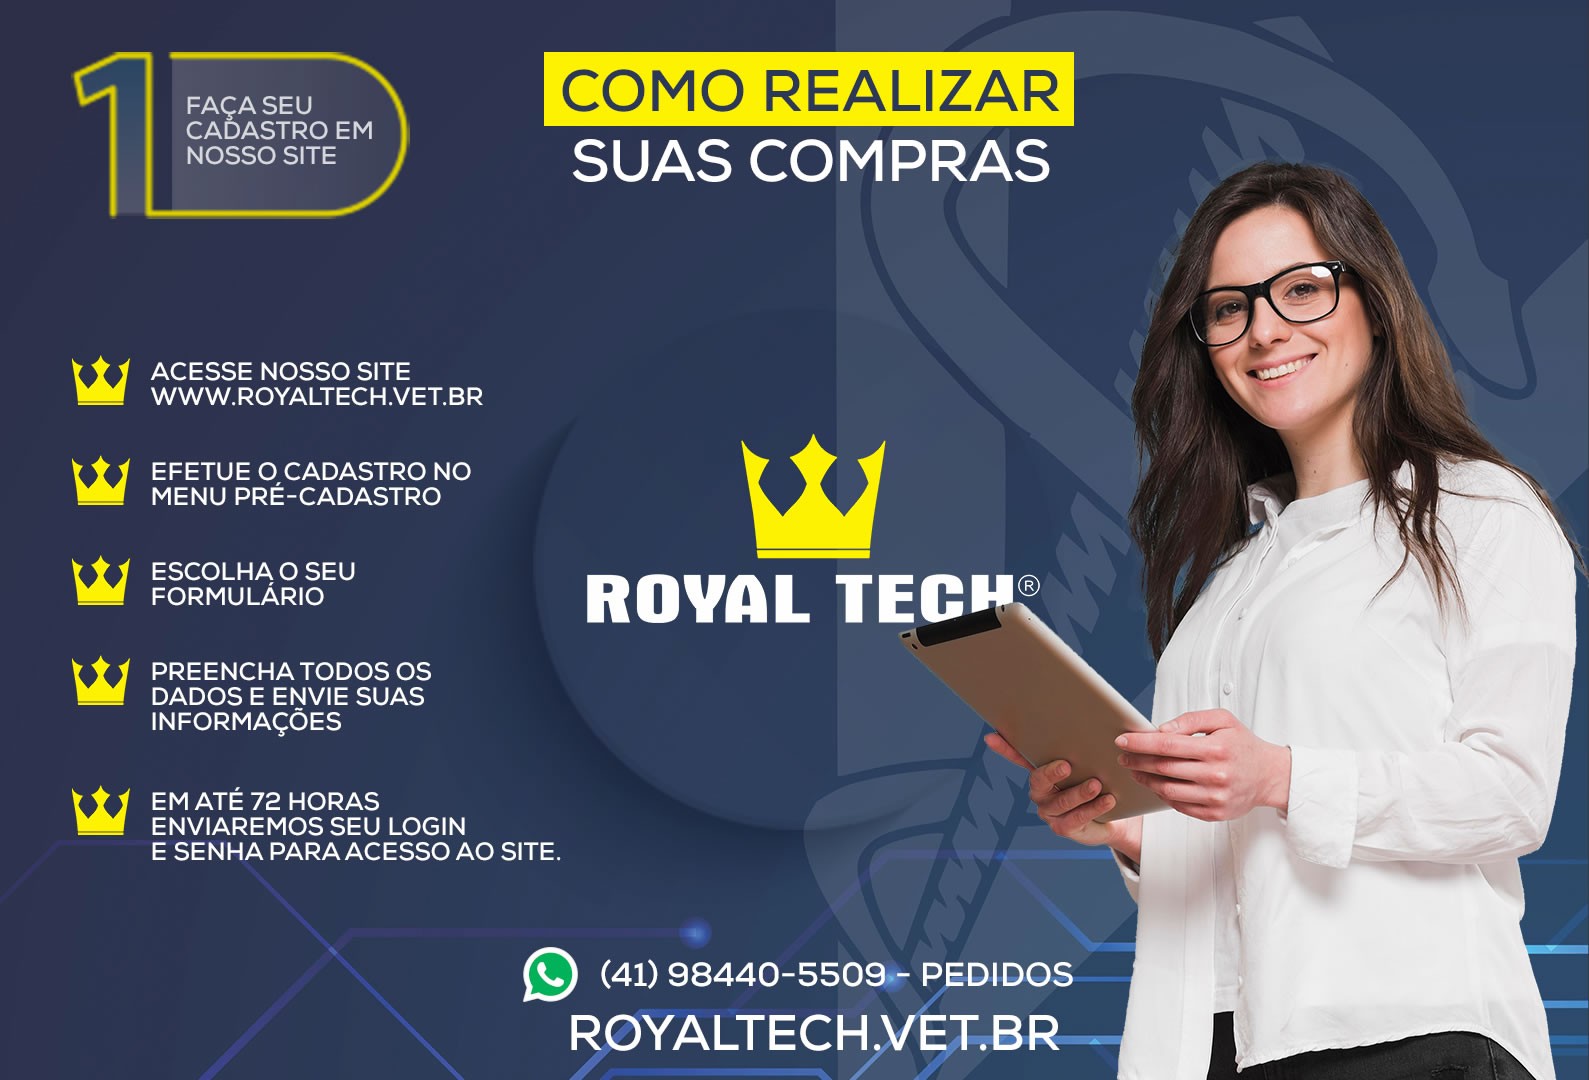 Royal Tech